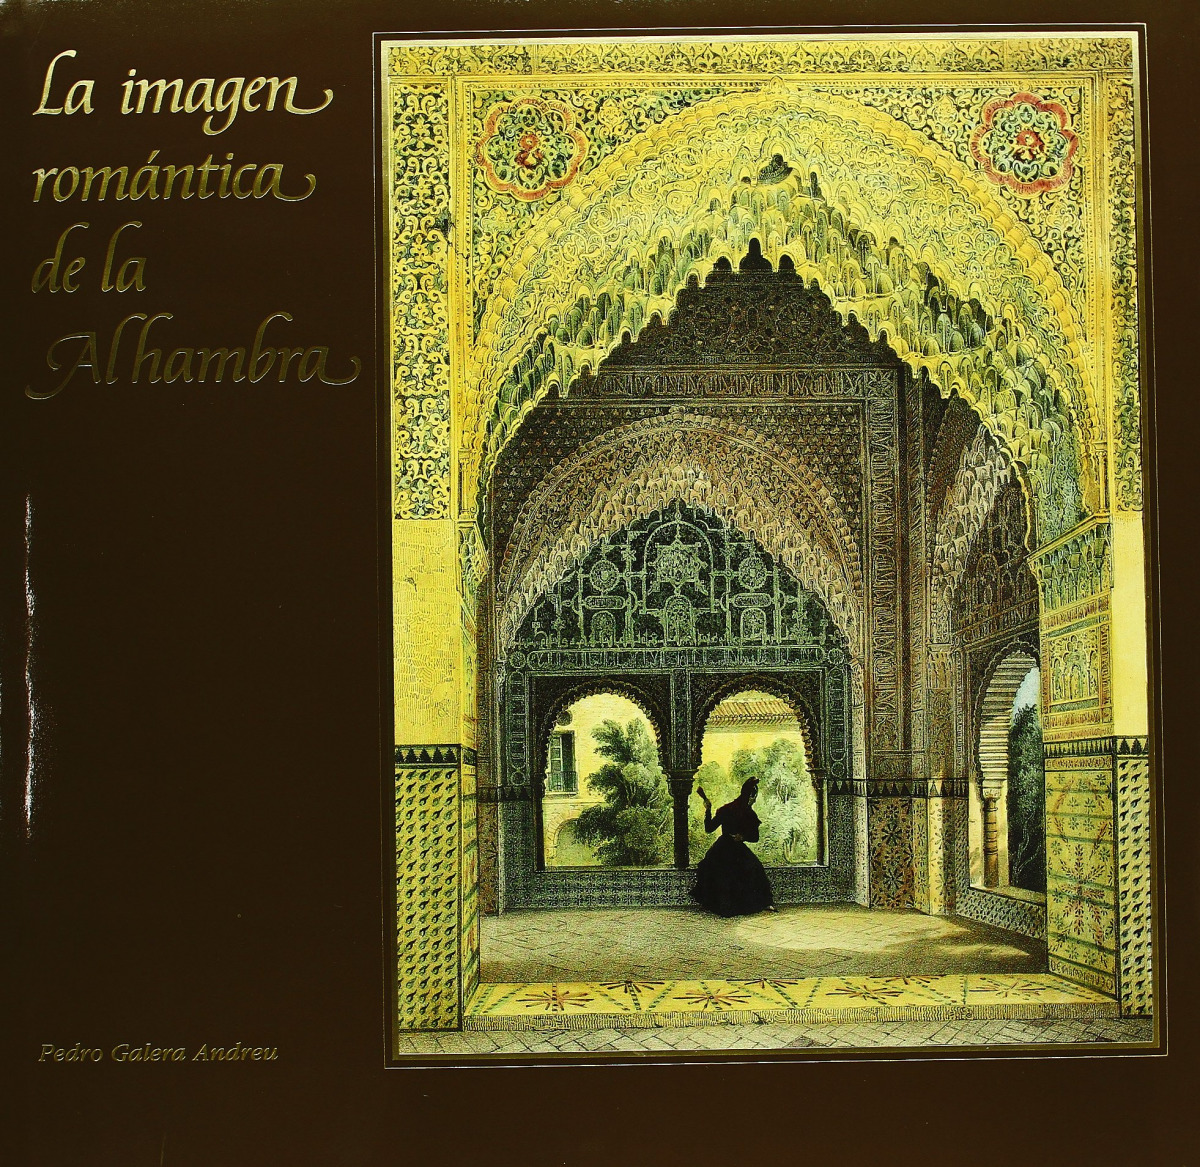 Imagen romántica de la Alhambra, la - Galera Andreu, Pedro A.